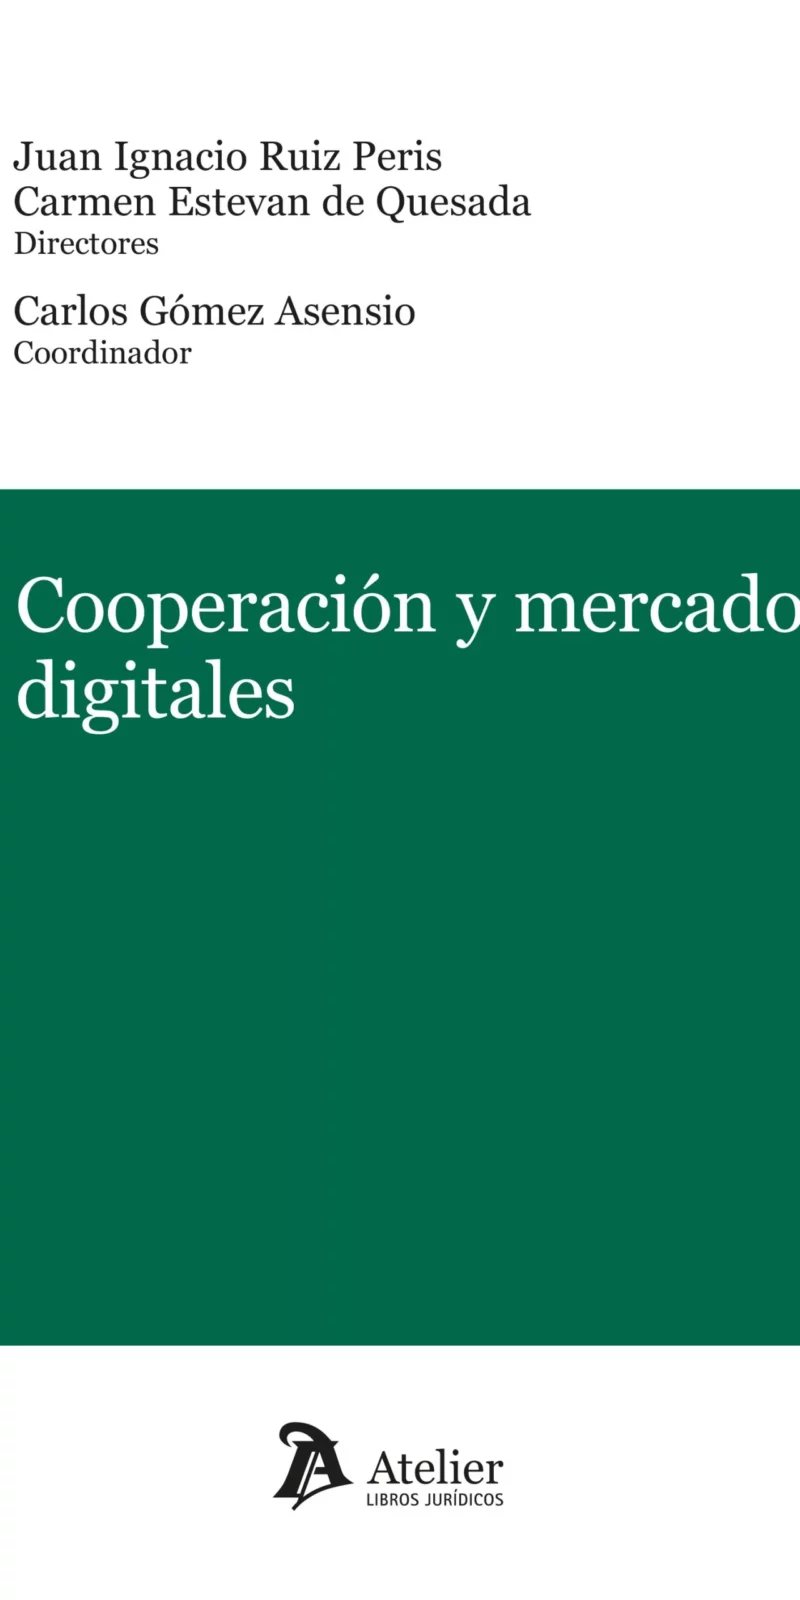 Cooperación y mercados digitales